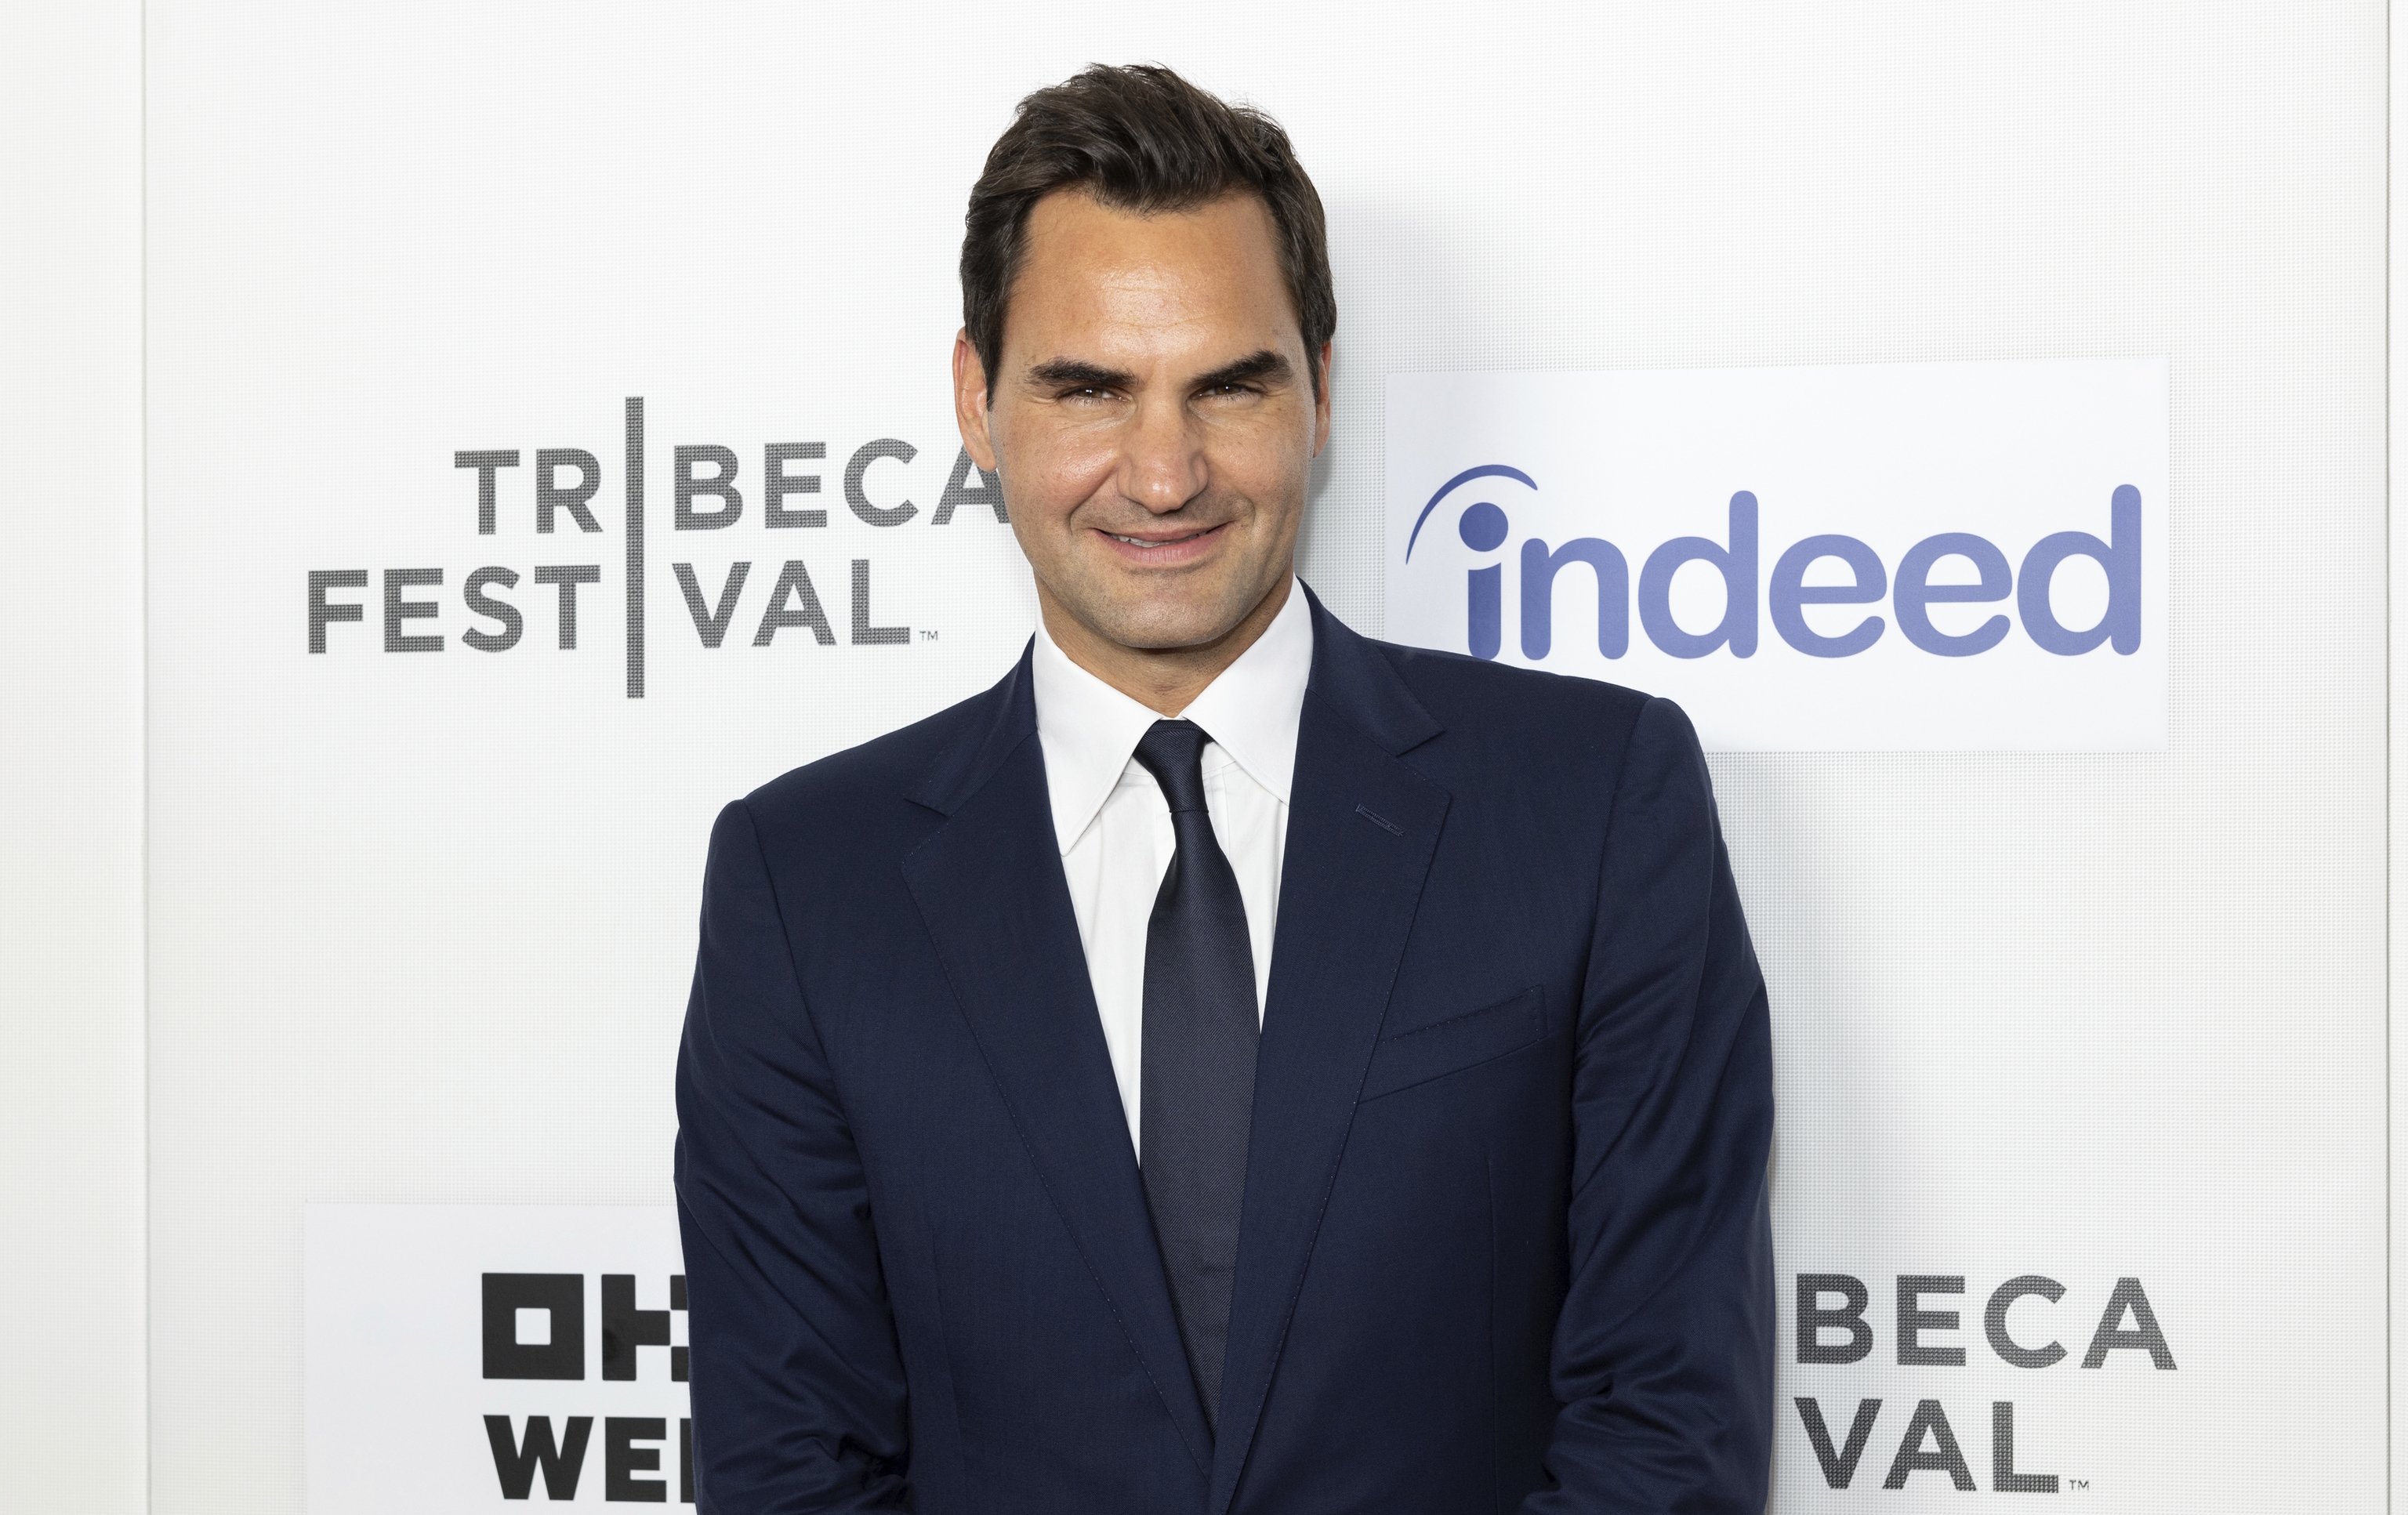 Federer attends the "Federer: Twelve Final Days" premiere.